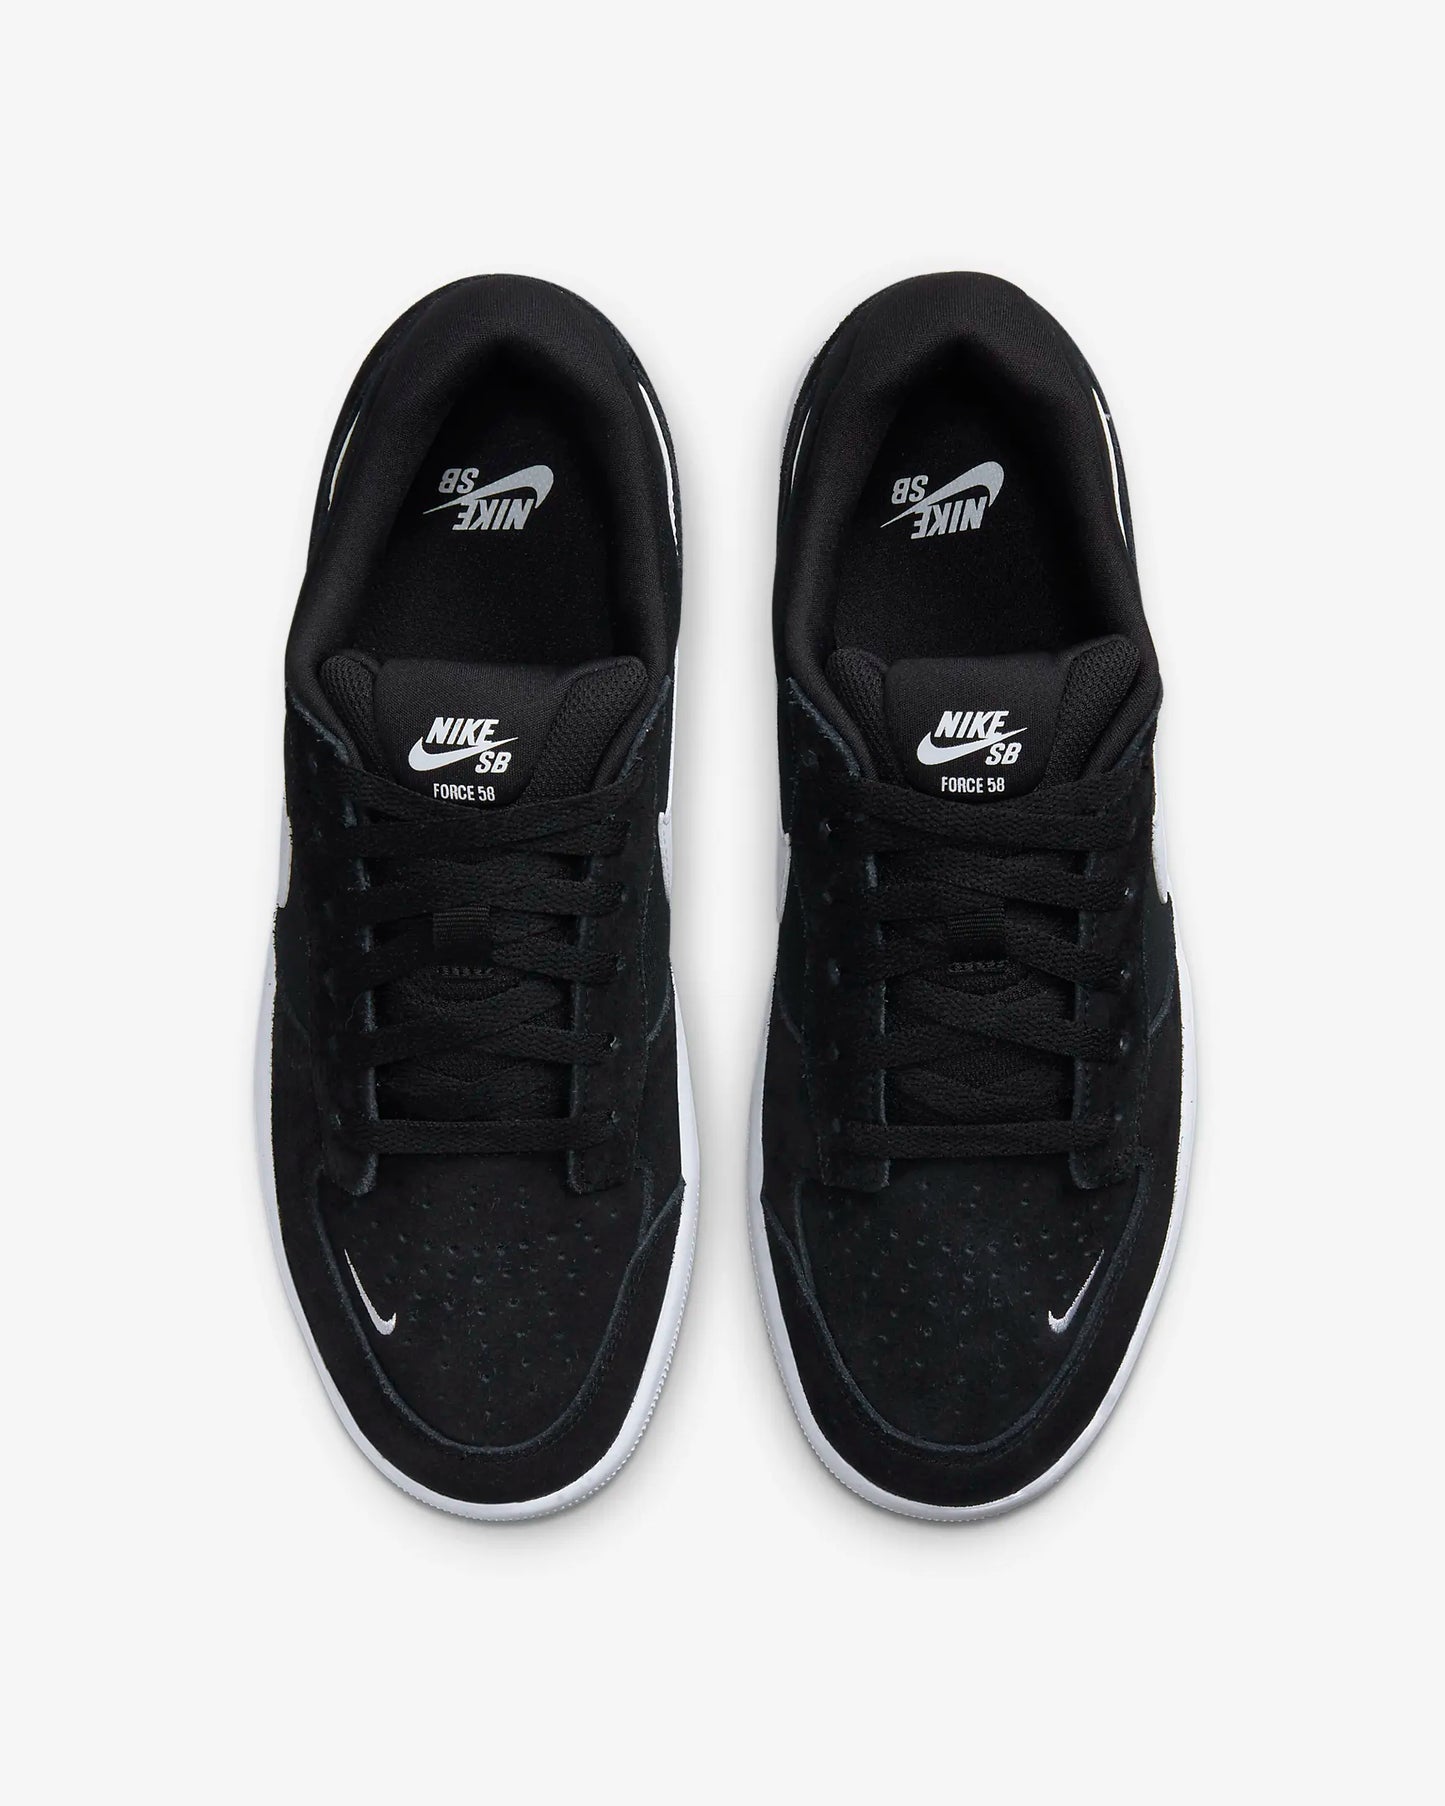 Nike SB Force 58 - Black